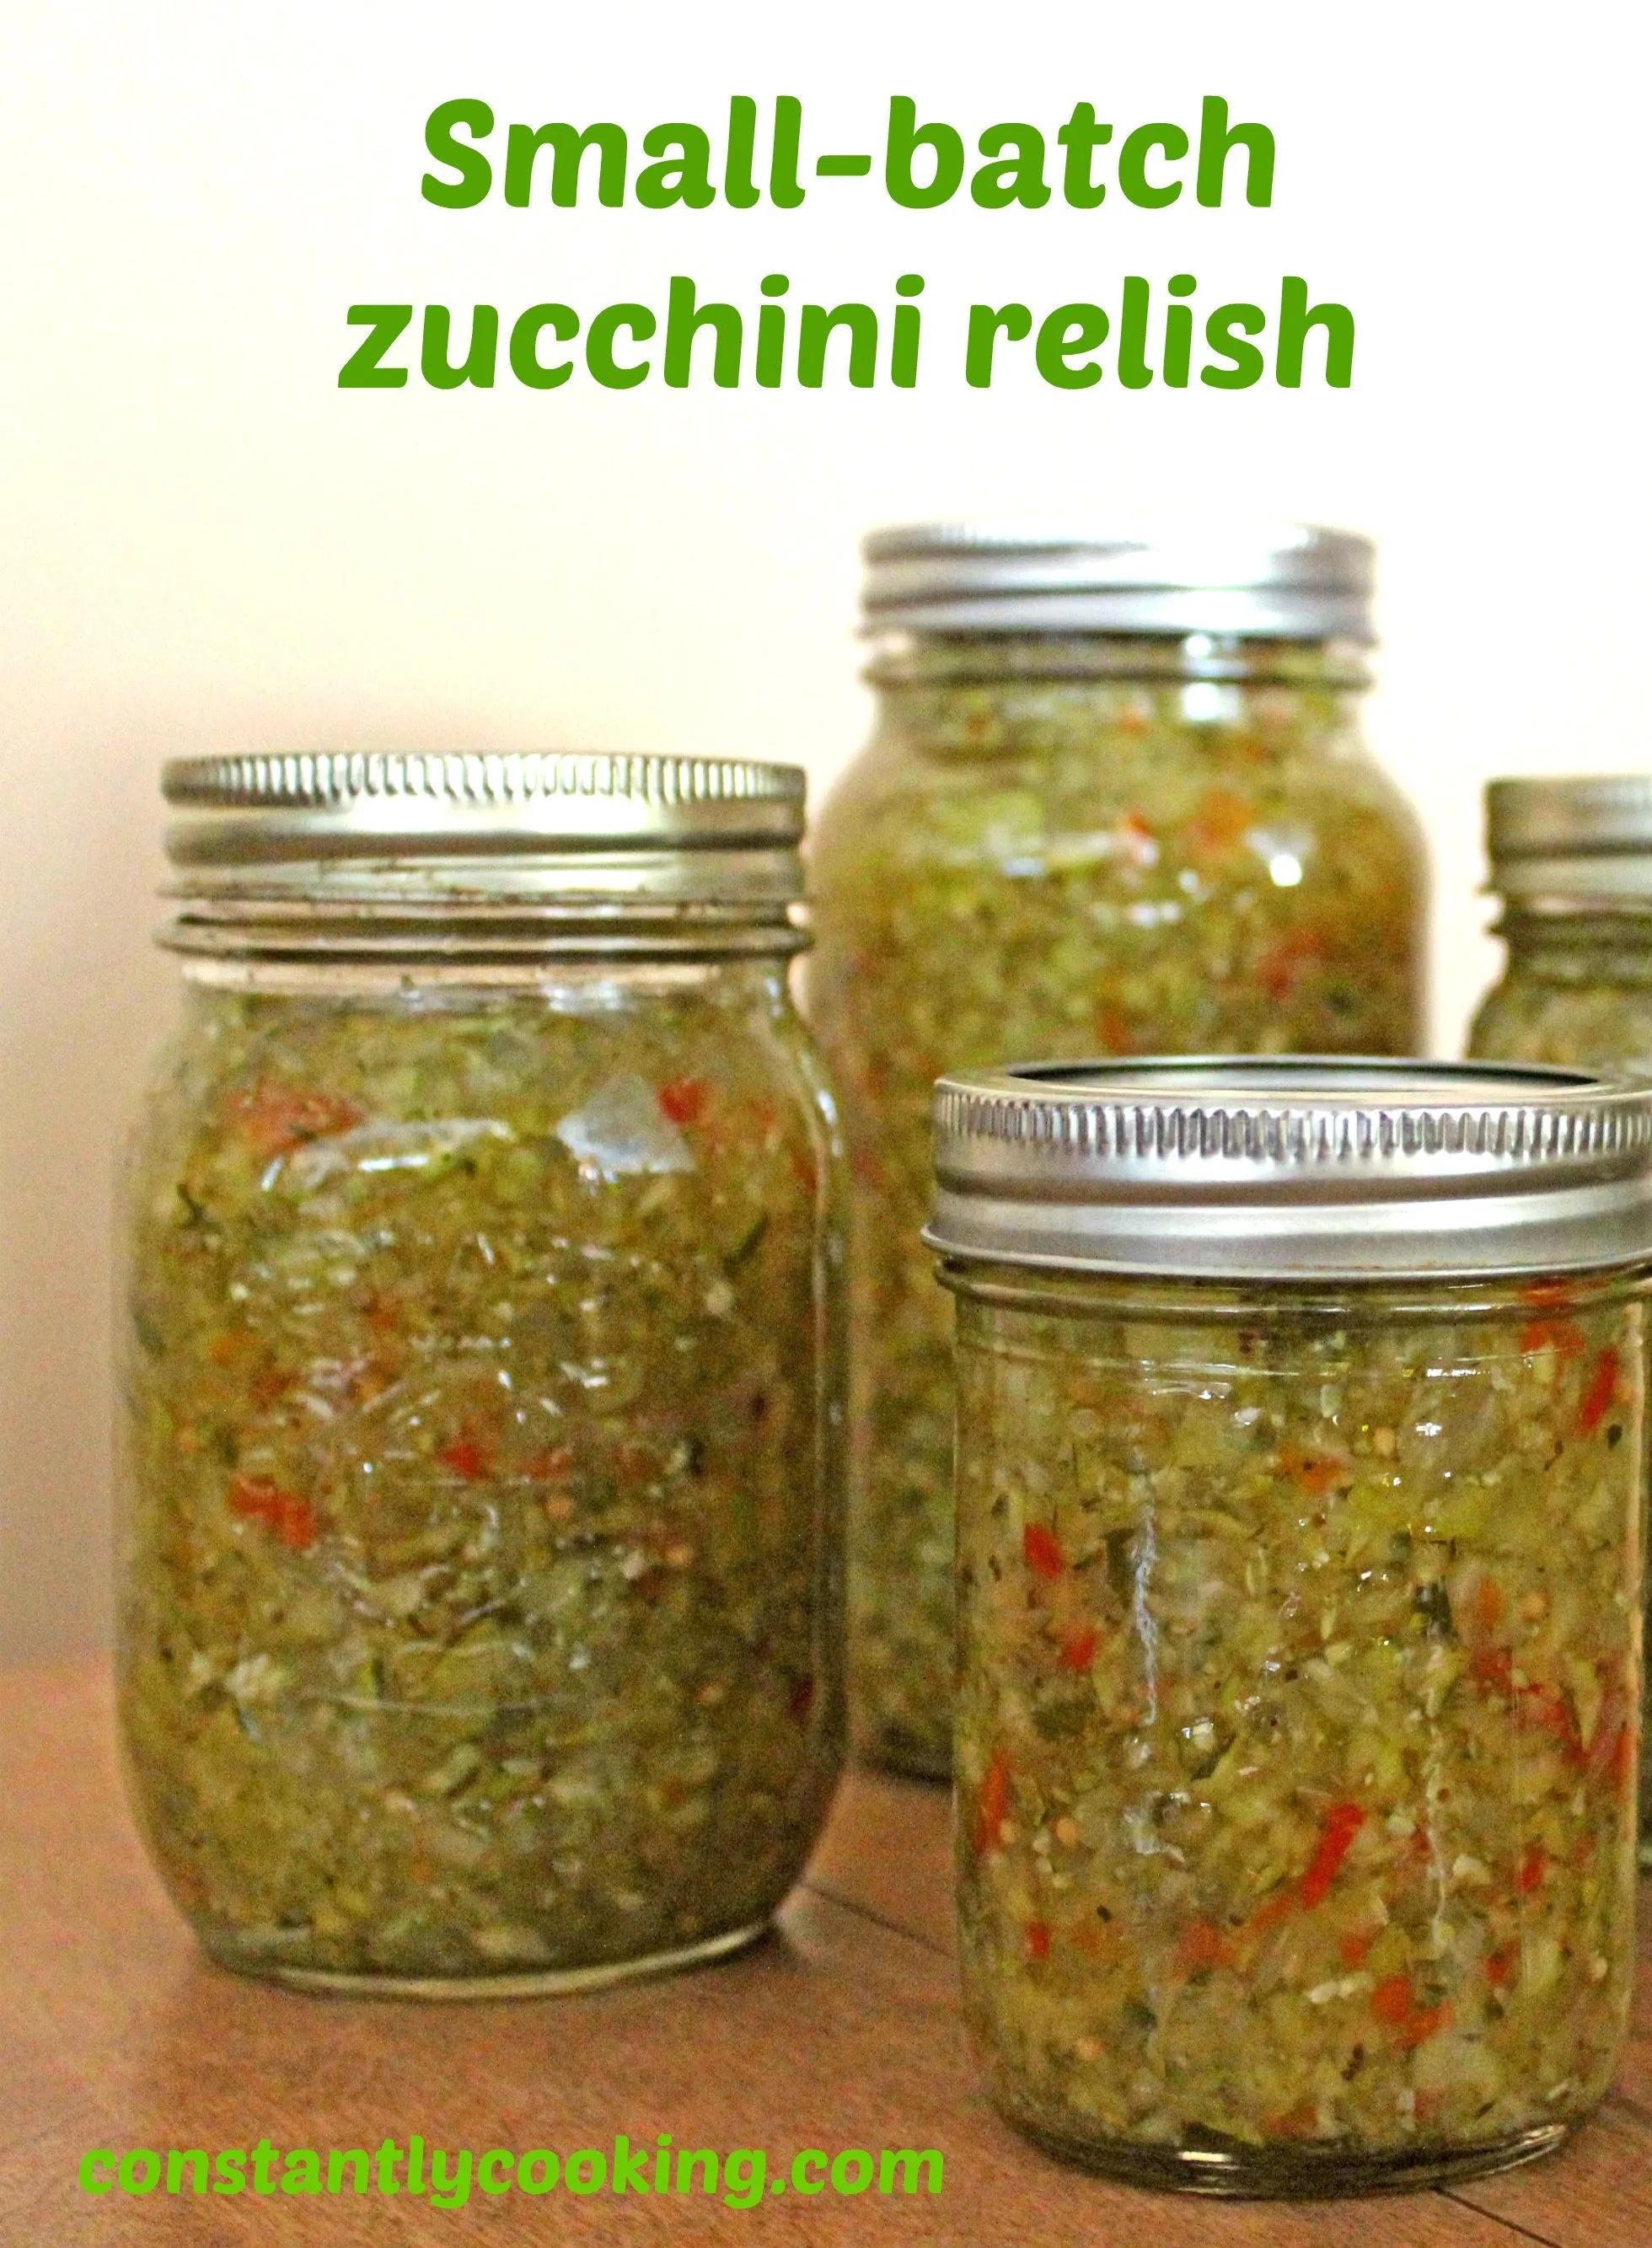 Small batch zucchini relish | Zucchini relish, Zucchini relish recipes ...